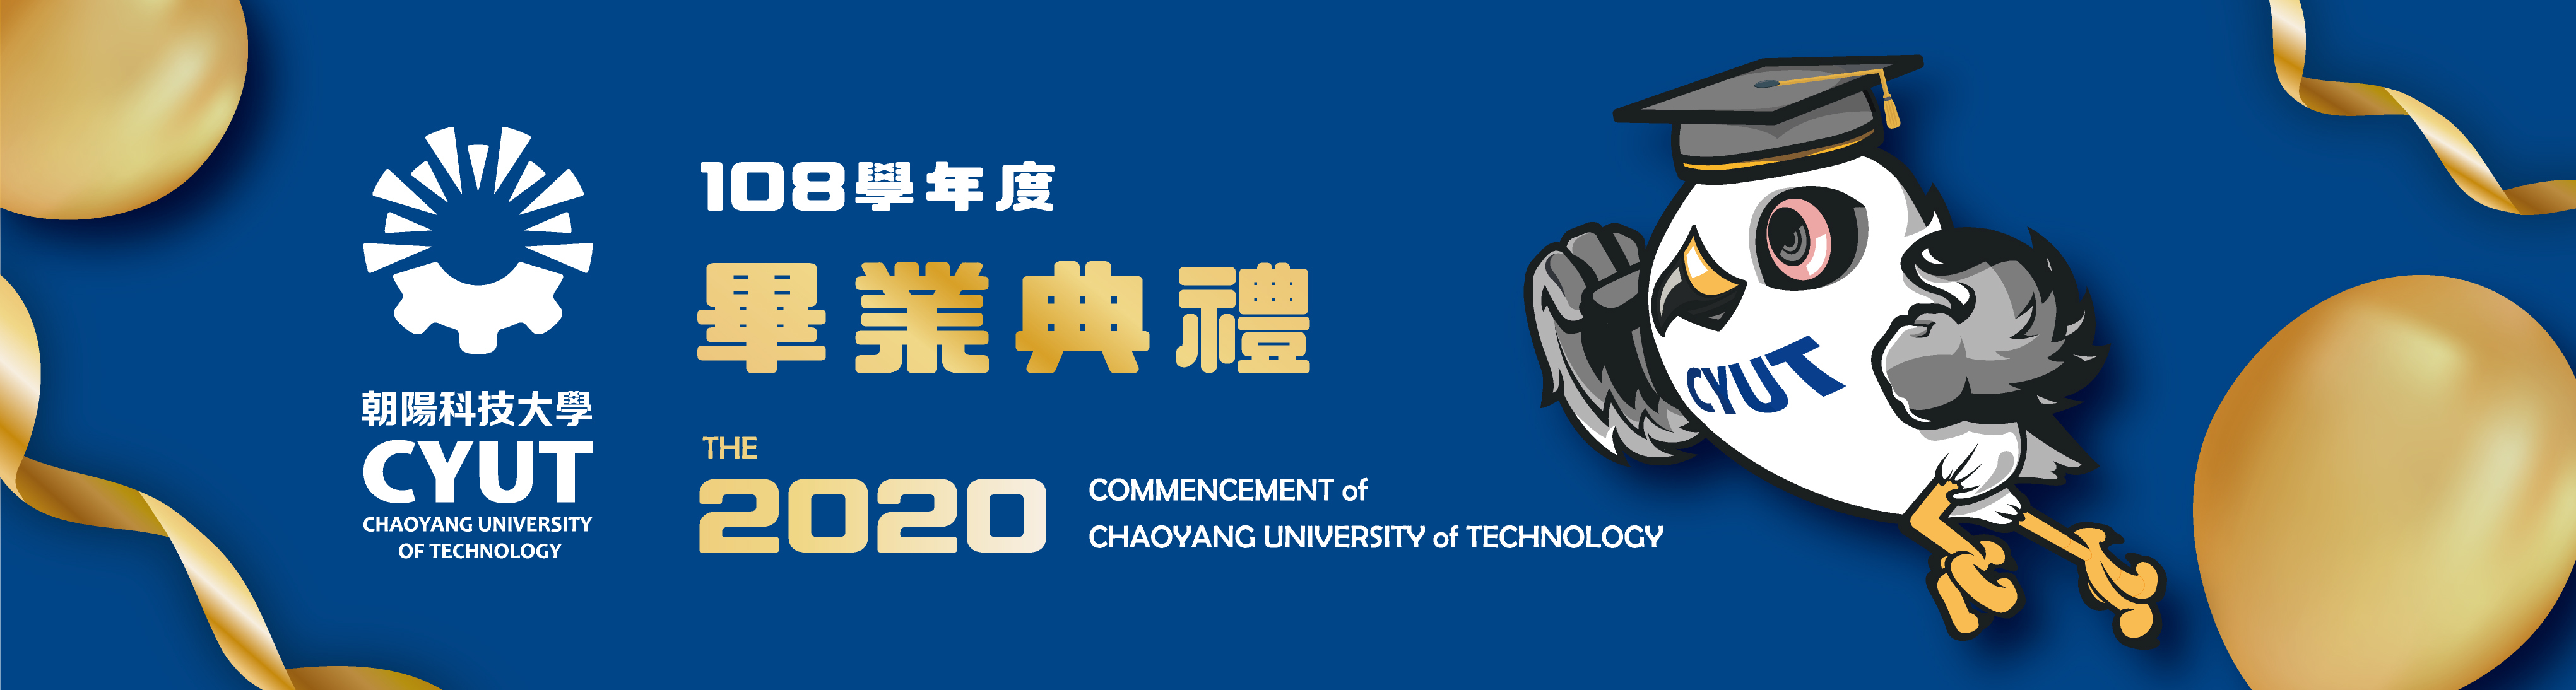 朝陽科技大學108學年度畢業典禮